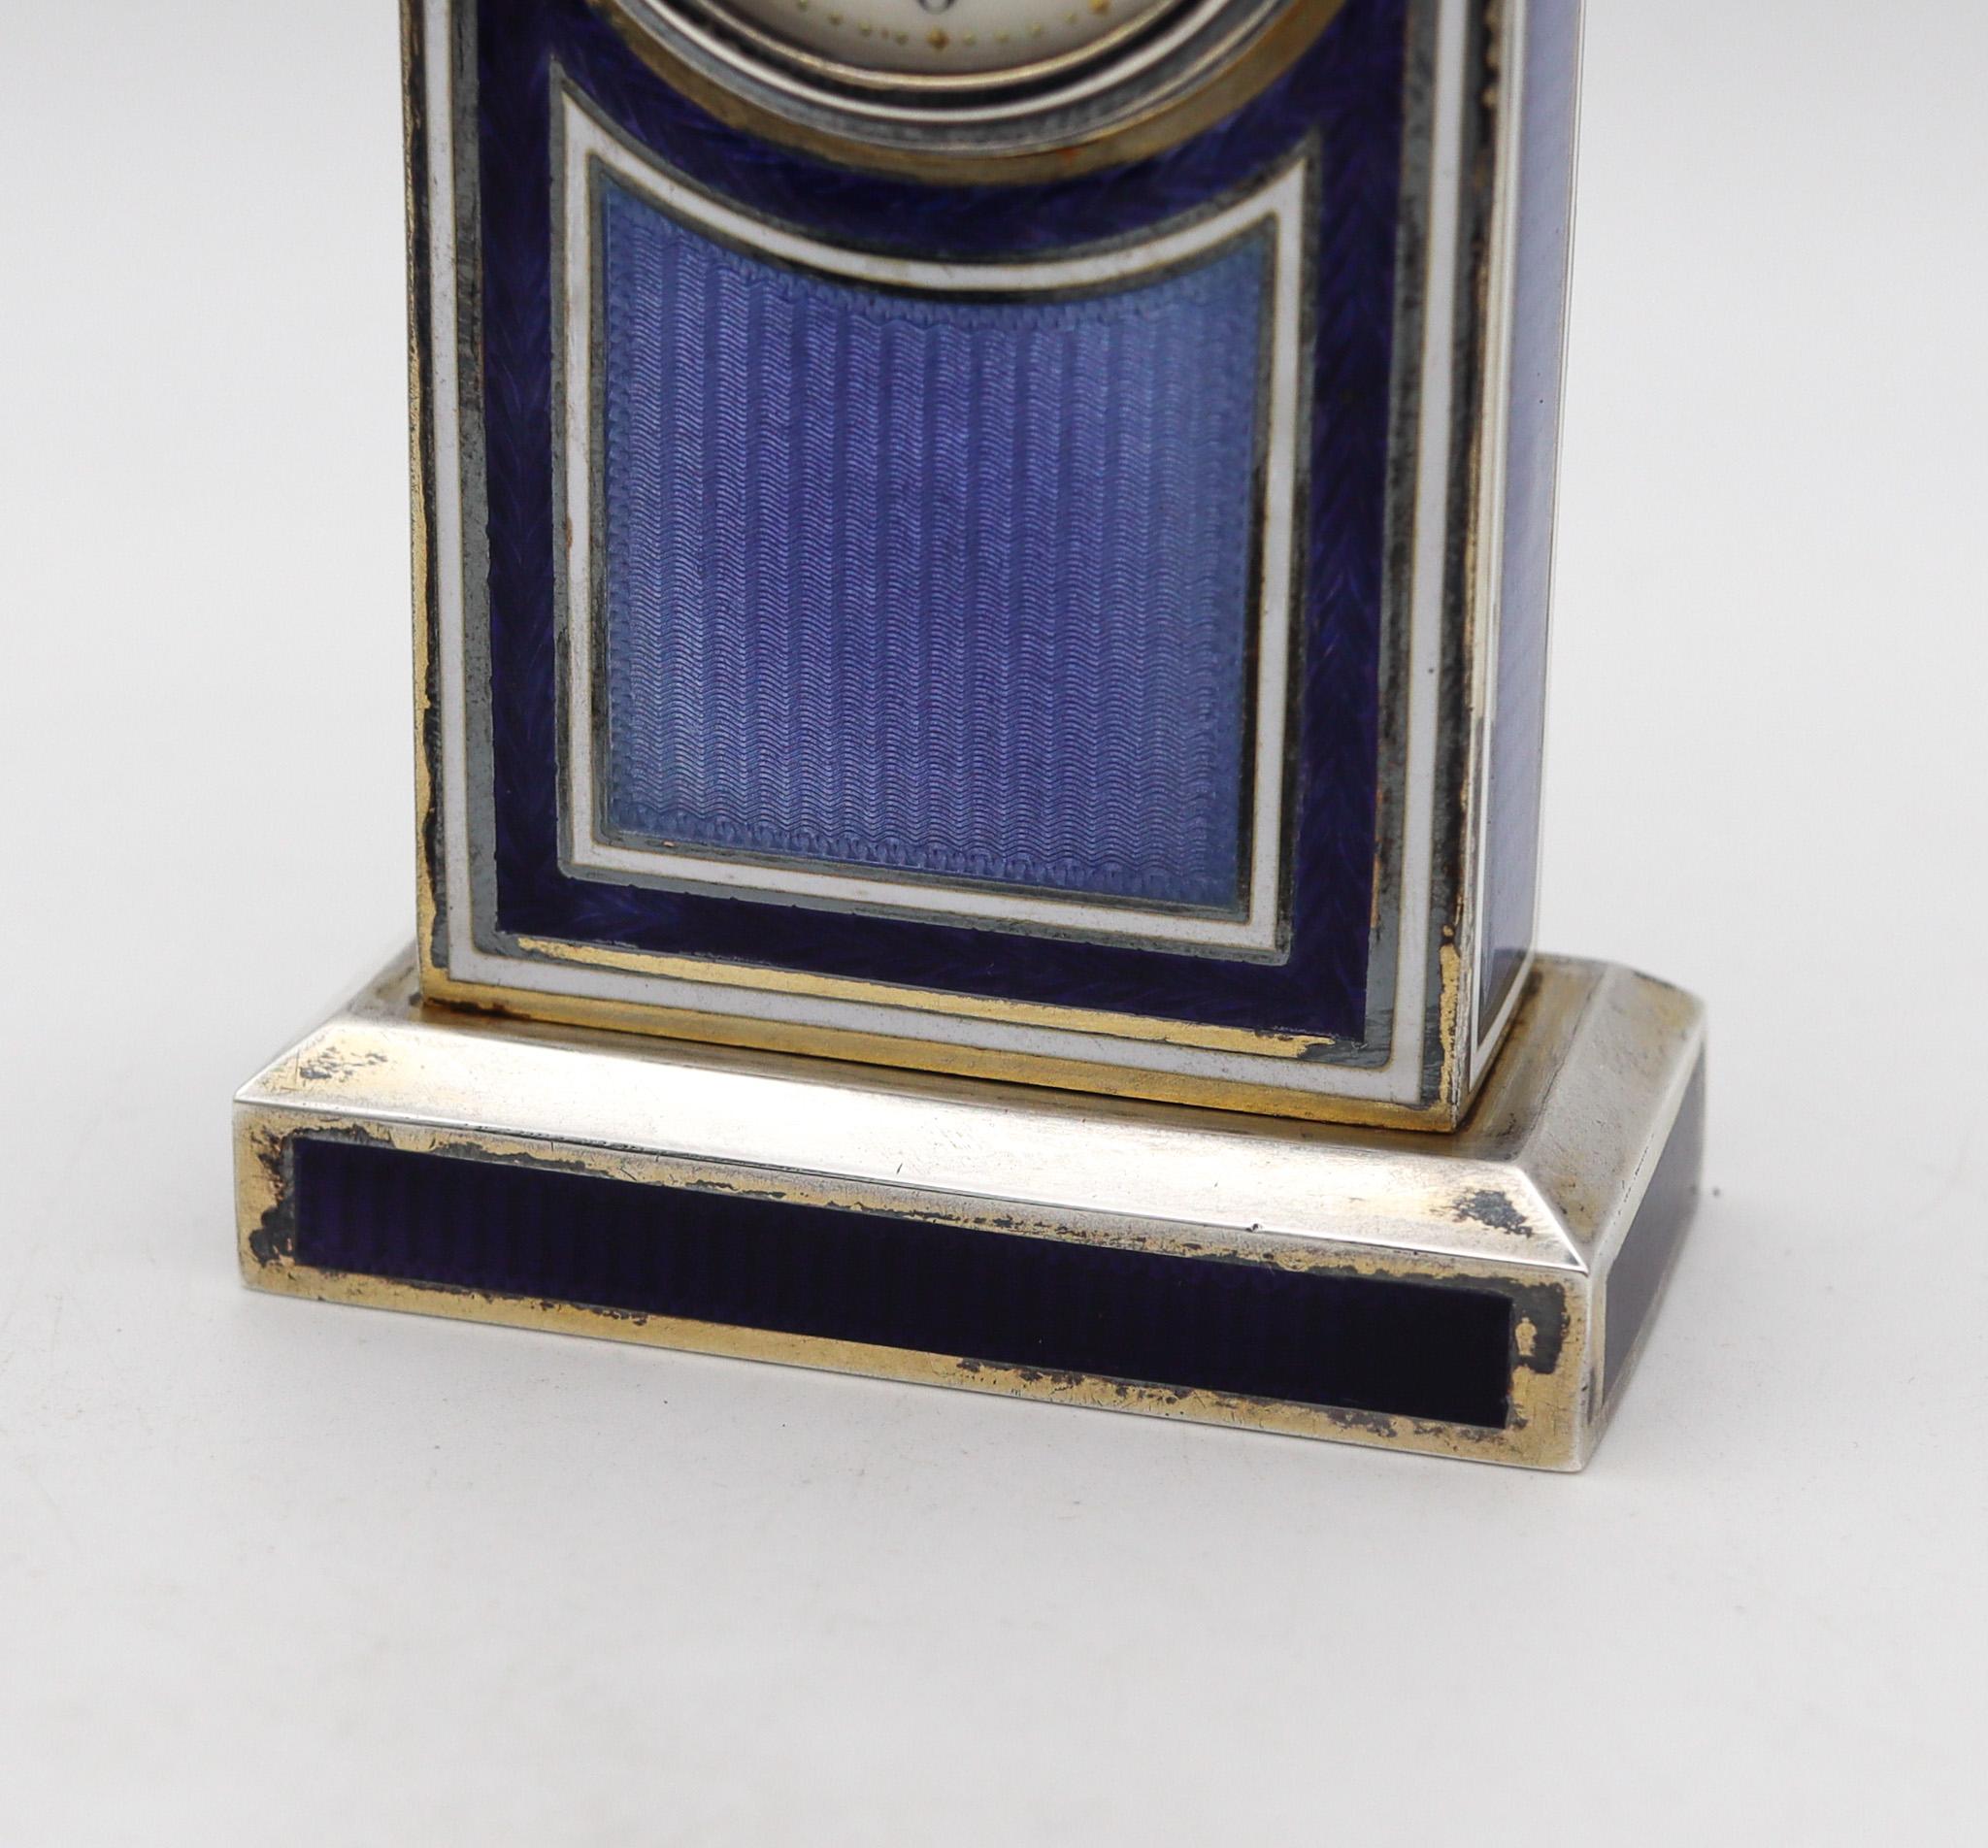 Eine Edwardianische Miniatur-Boudoir-Tischuhr.

Schöne Miniatur-Tischuhr, hergestellt in der Schweiz während der Edwardian-belle epoque Periode, zurück im Jahr 1905. Die Handwerkskunst dieser Uhr ist außergewöhnlich, mit wunderschönen